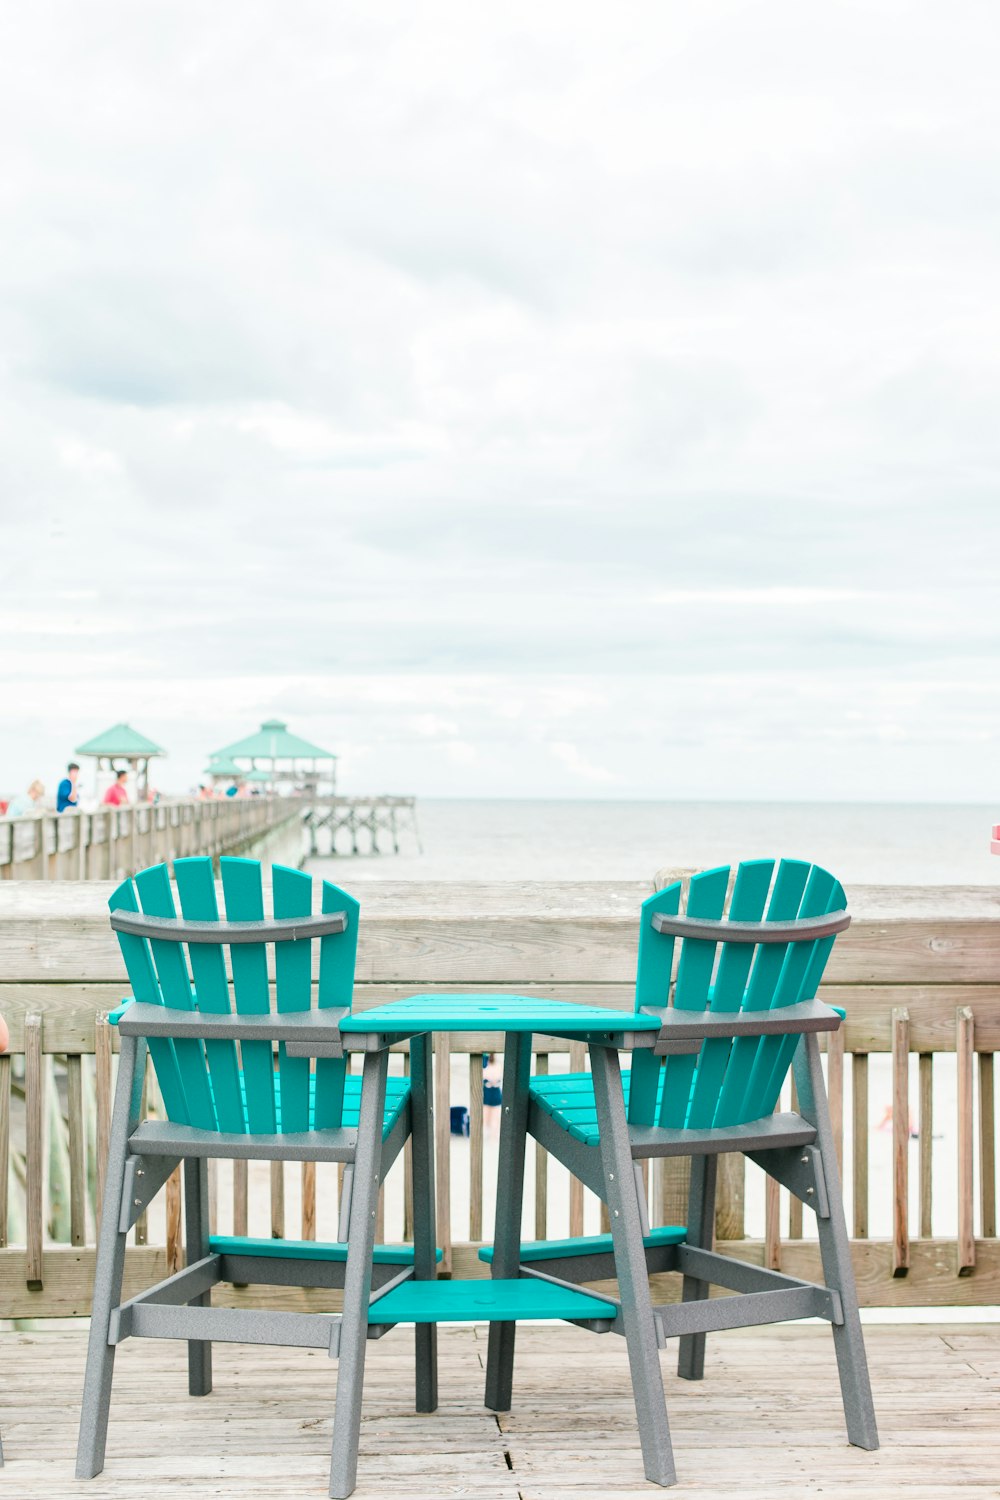 chaise en bois bleu et gris près du rivage